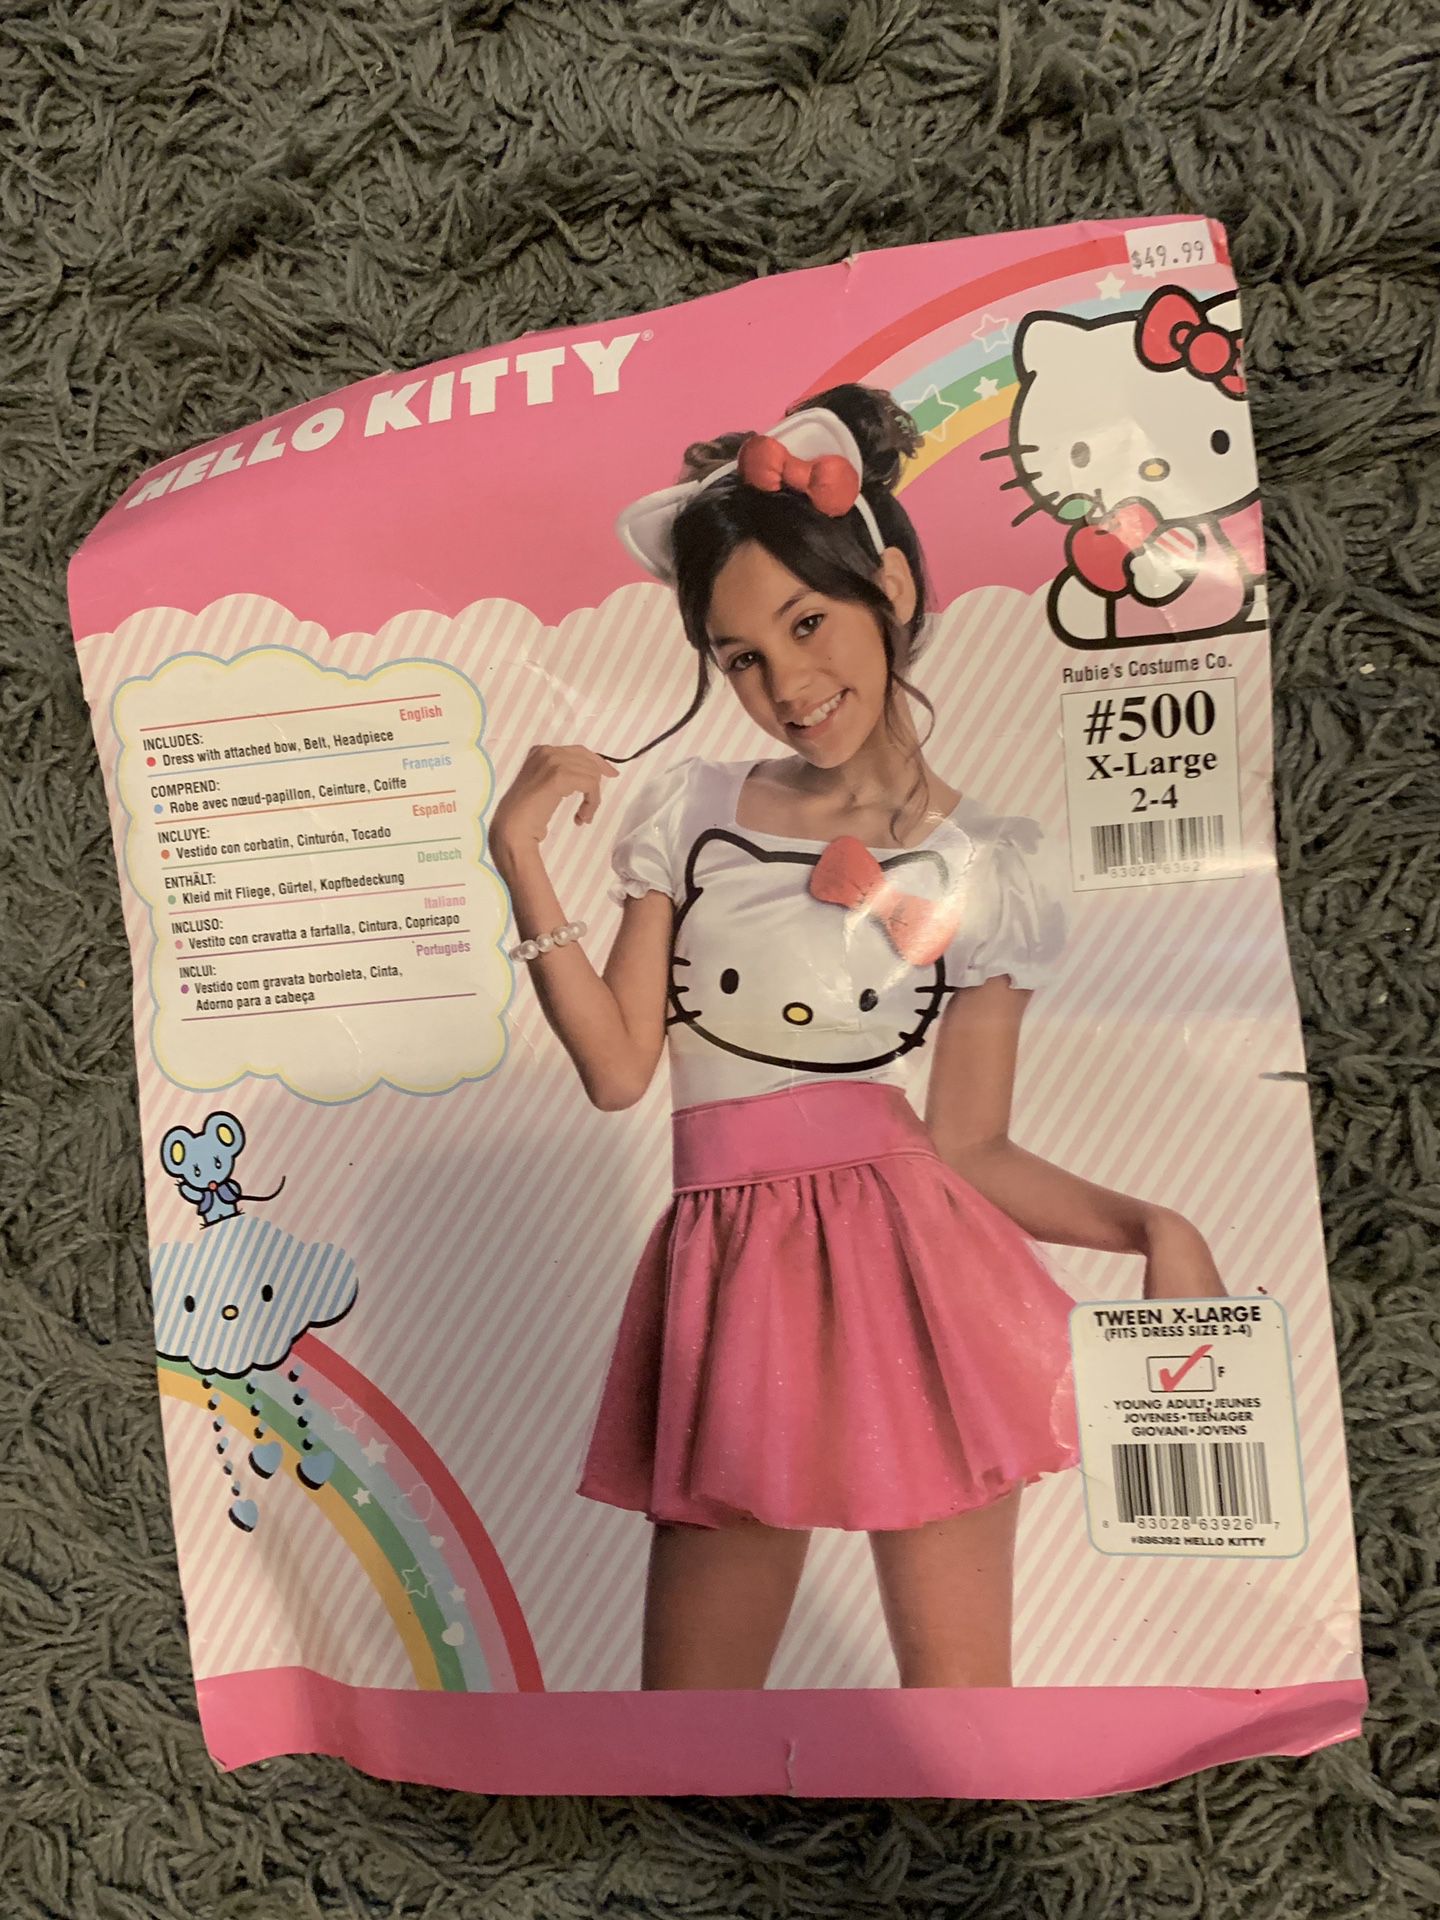 Hello Kitty Halloween Costume